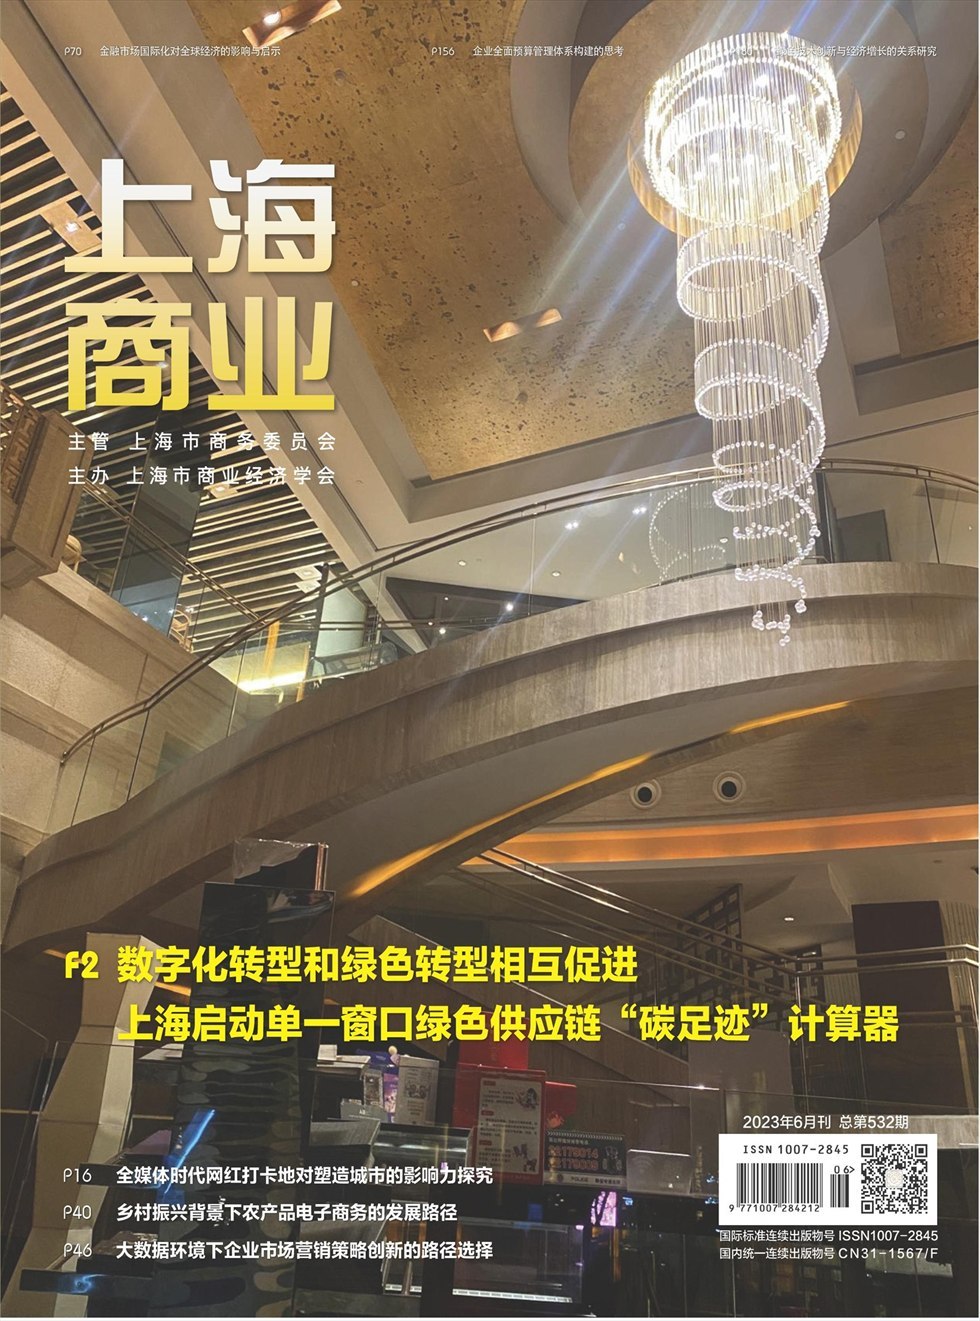 上海商业杂志封面